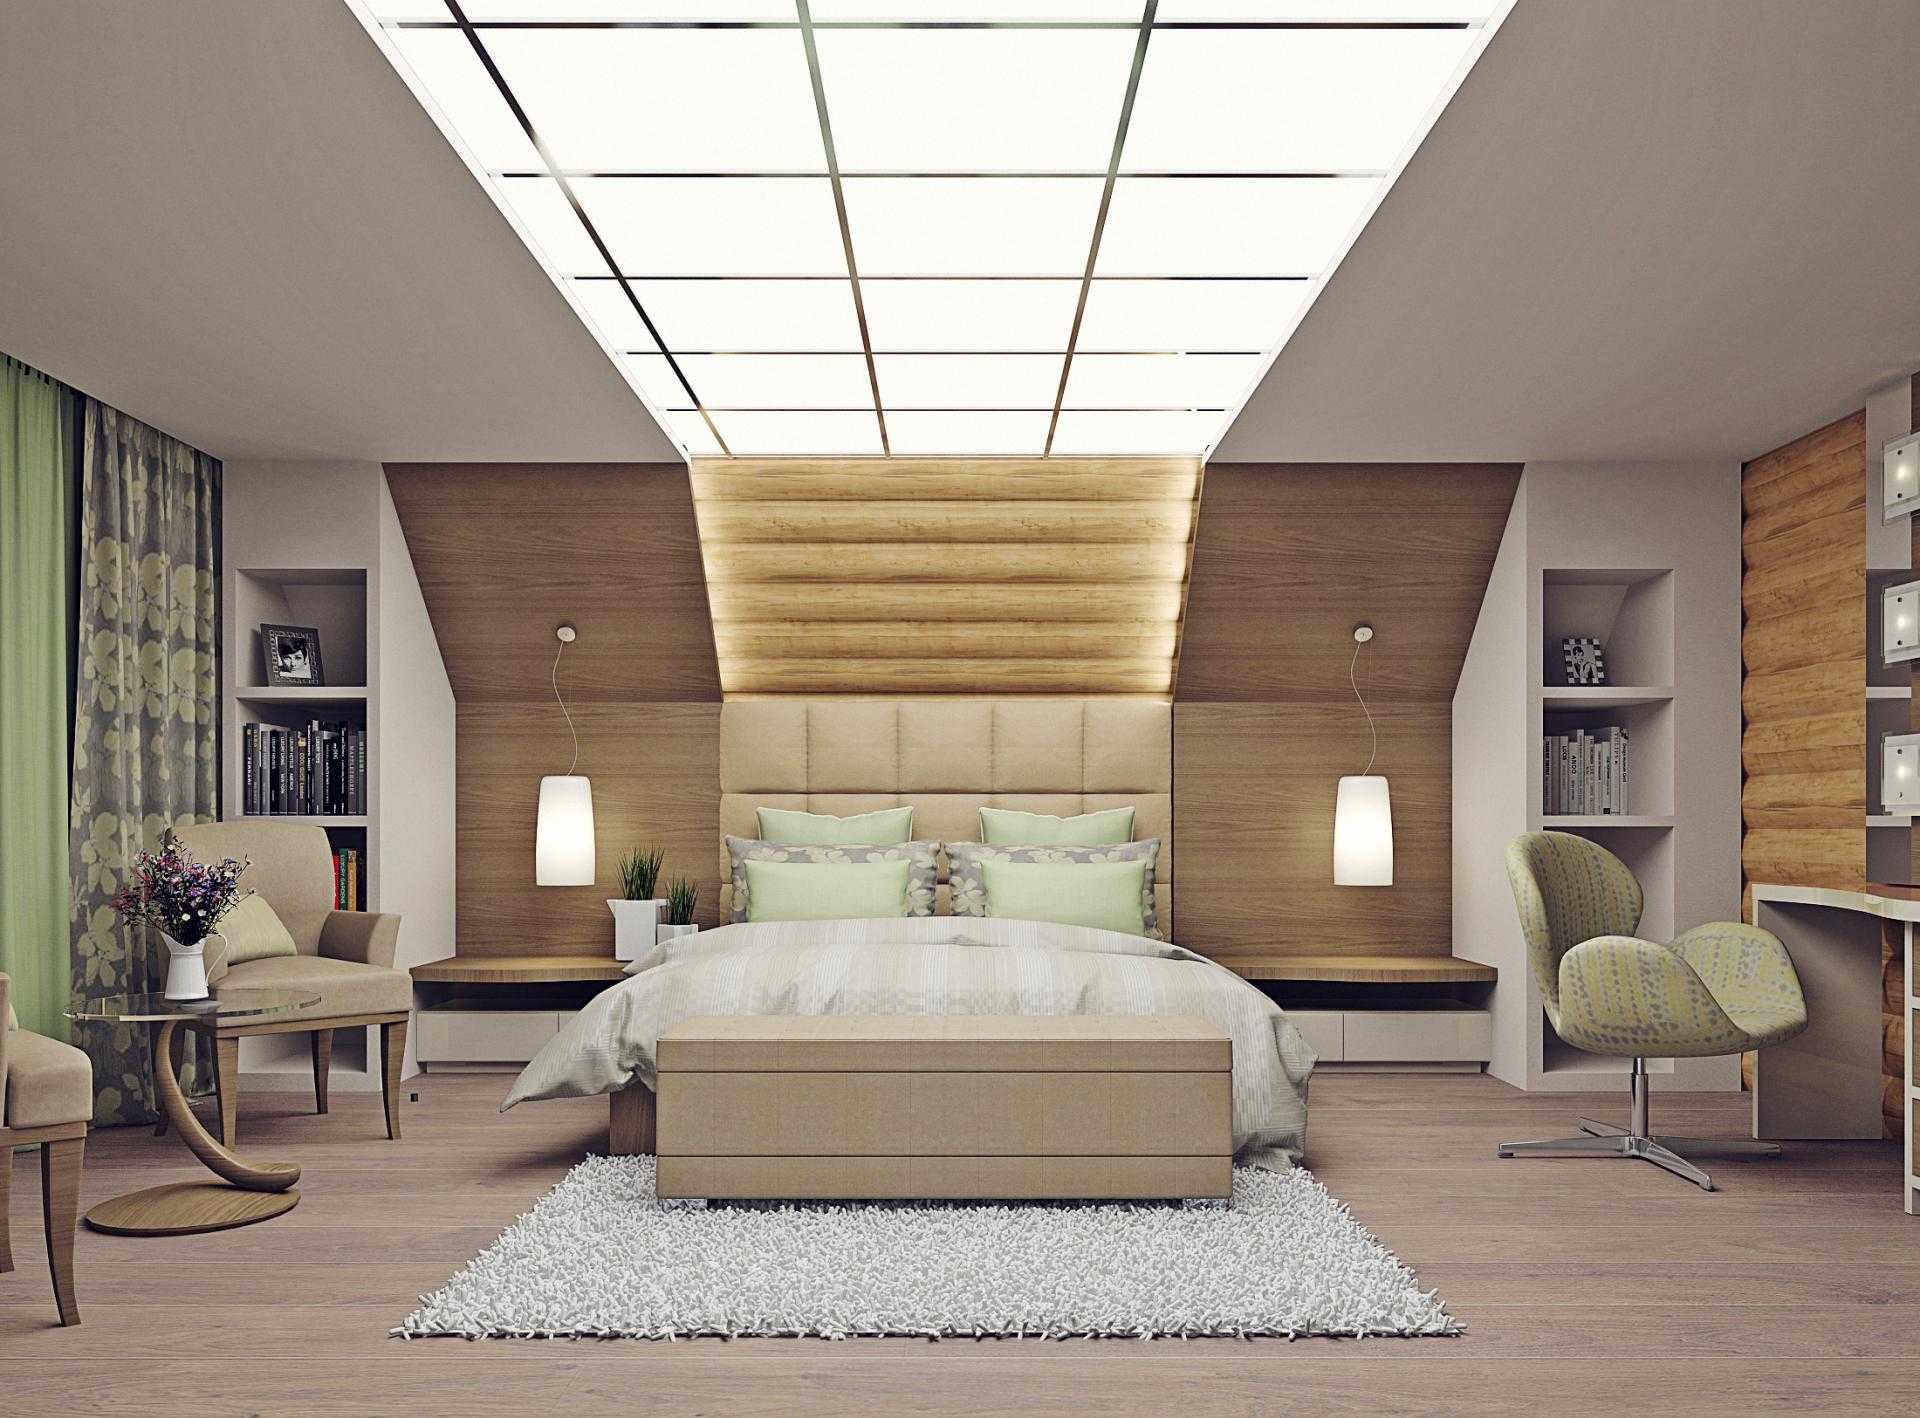 Интерьер мансарды в деревянном доме 47 фото красивых идей дизайна мансардного этажа на даче, уютные варианты примеры изнутри этажа